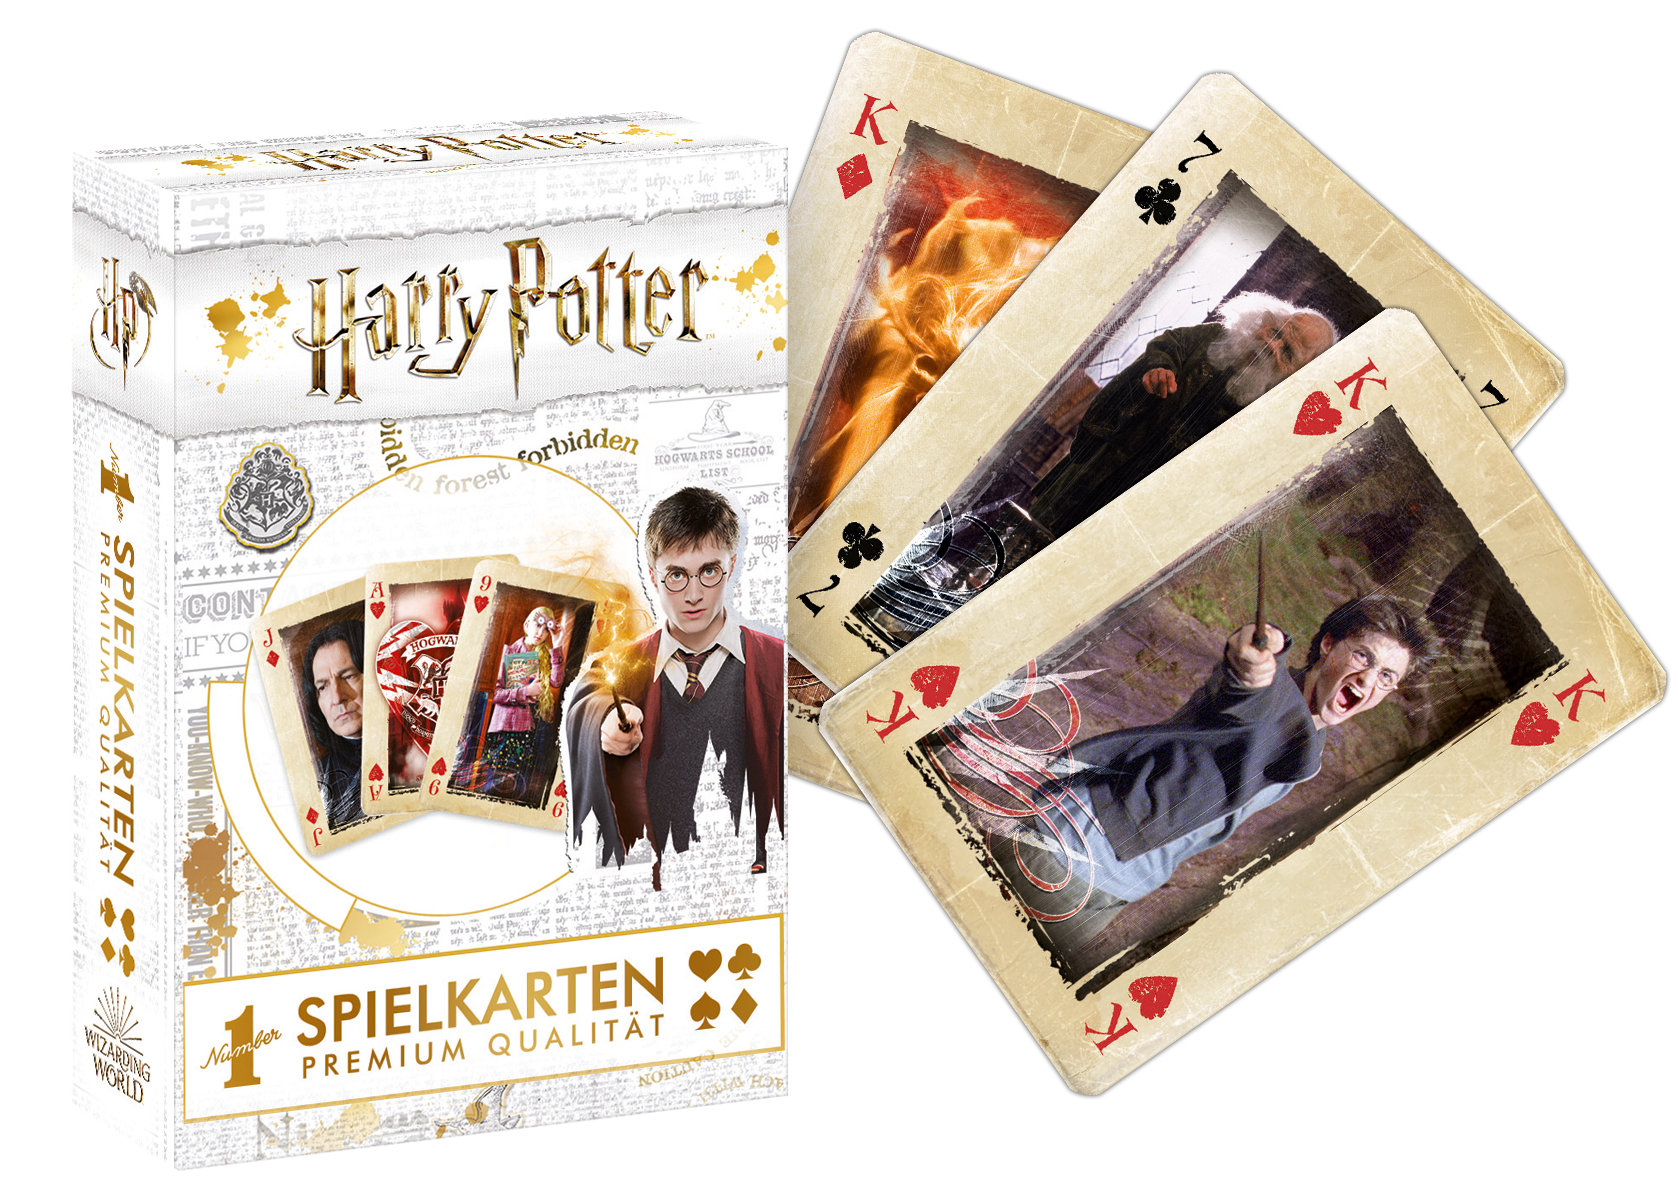 Number 1 Spielkarten Harry Potter gold